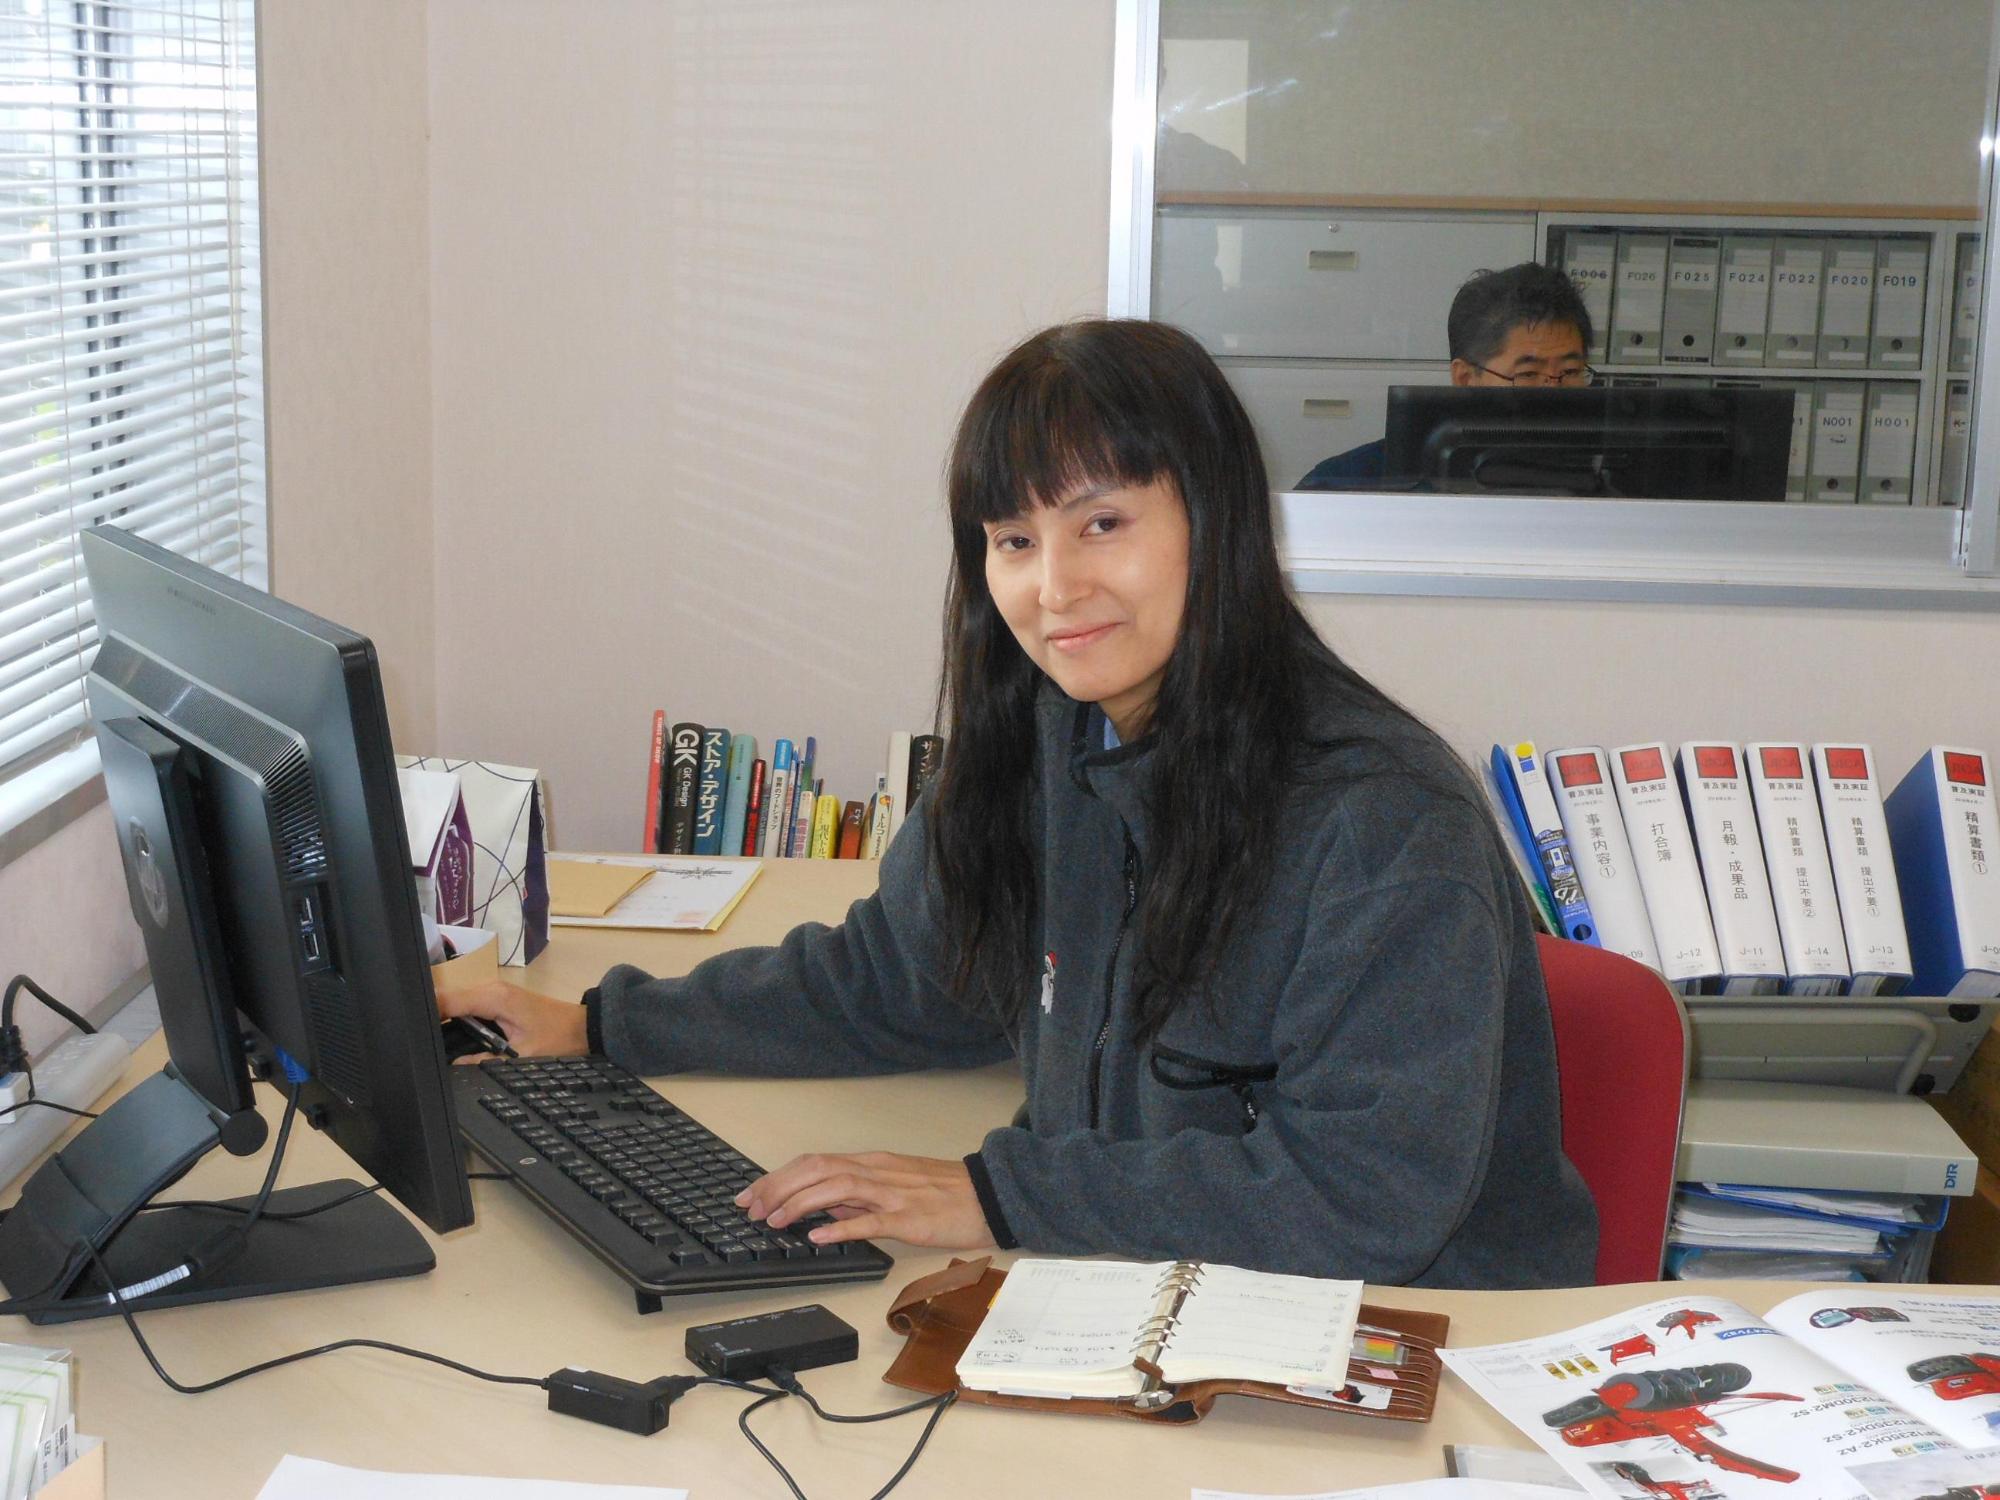 オフィス内でパソコンを使って入力業務をしている女性の写真